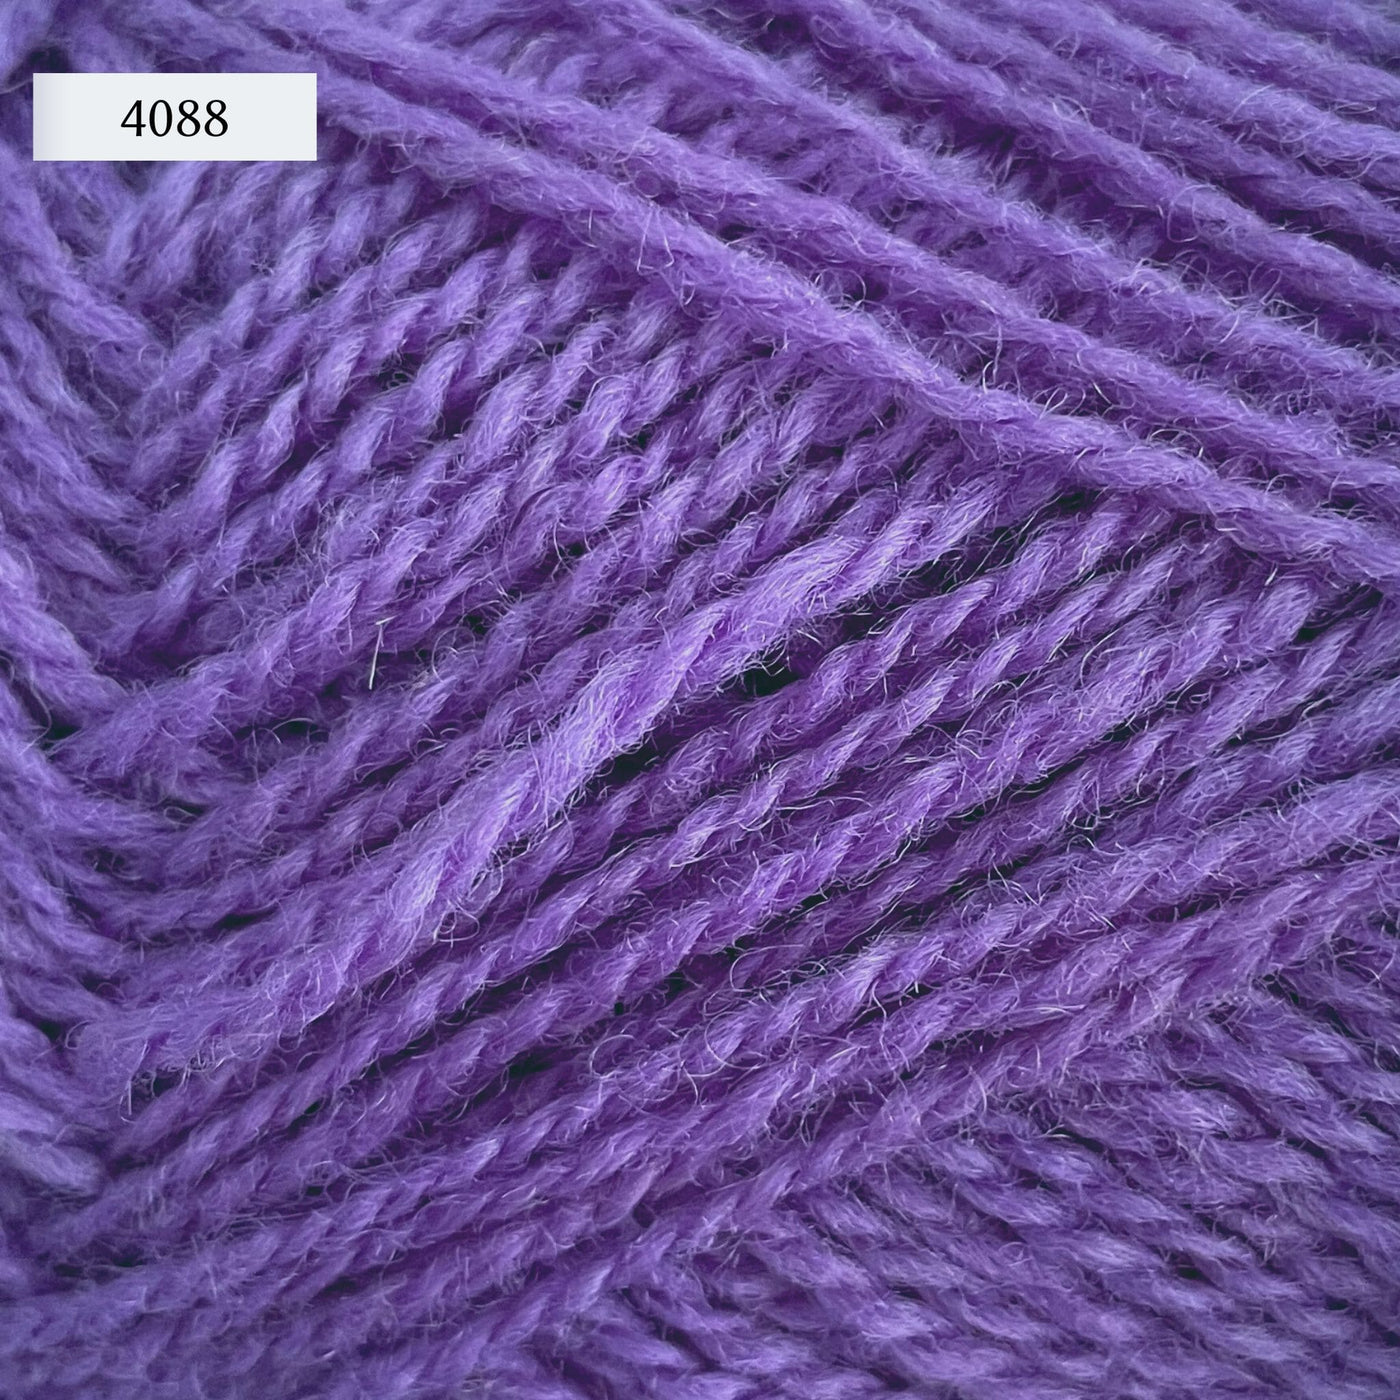 Rauma Finullgarn, a fingering/sport weight yarn, in color 4088, a medium purple